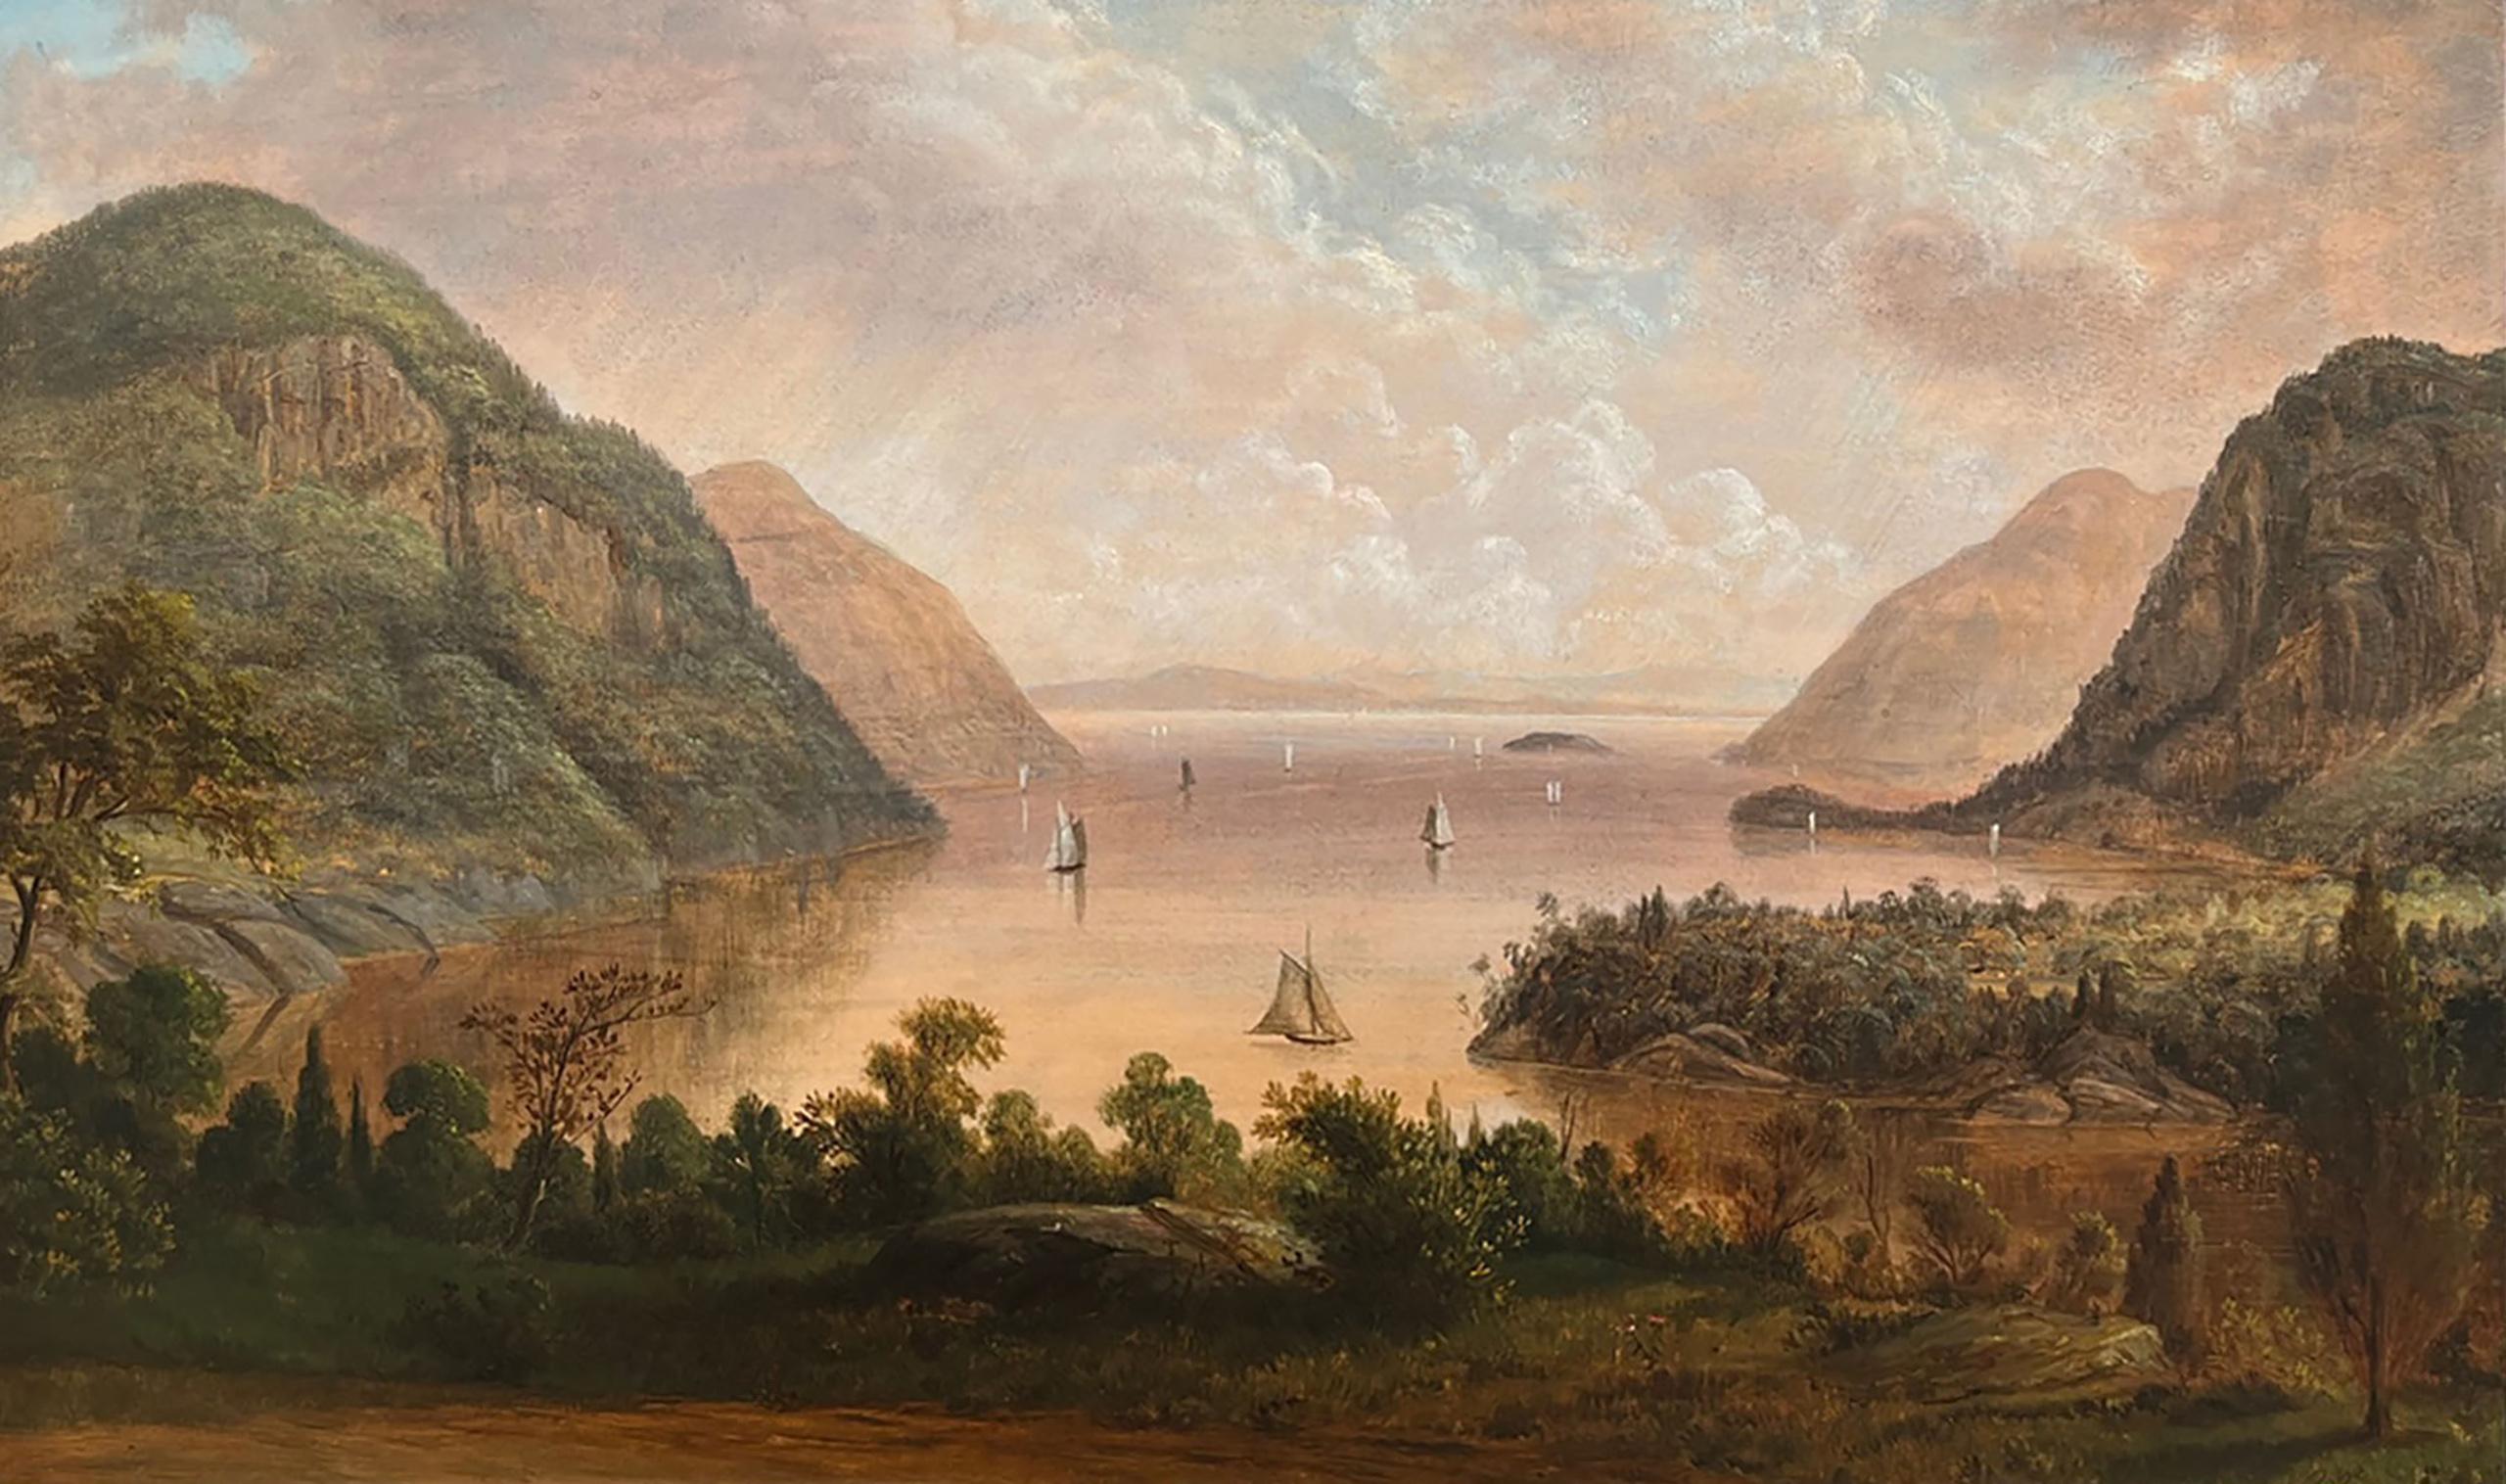 Highlands - Hudson River von West Point aus von Thomas B. Pope (Amerikaner, 1834-1891) – Painting von Thomas Benjamin Pope